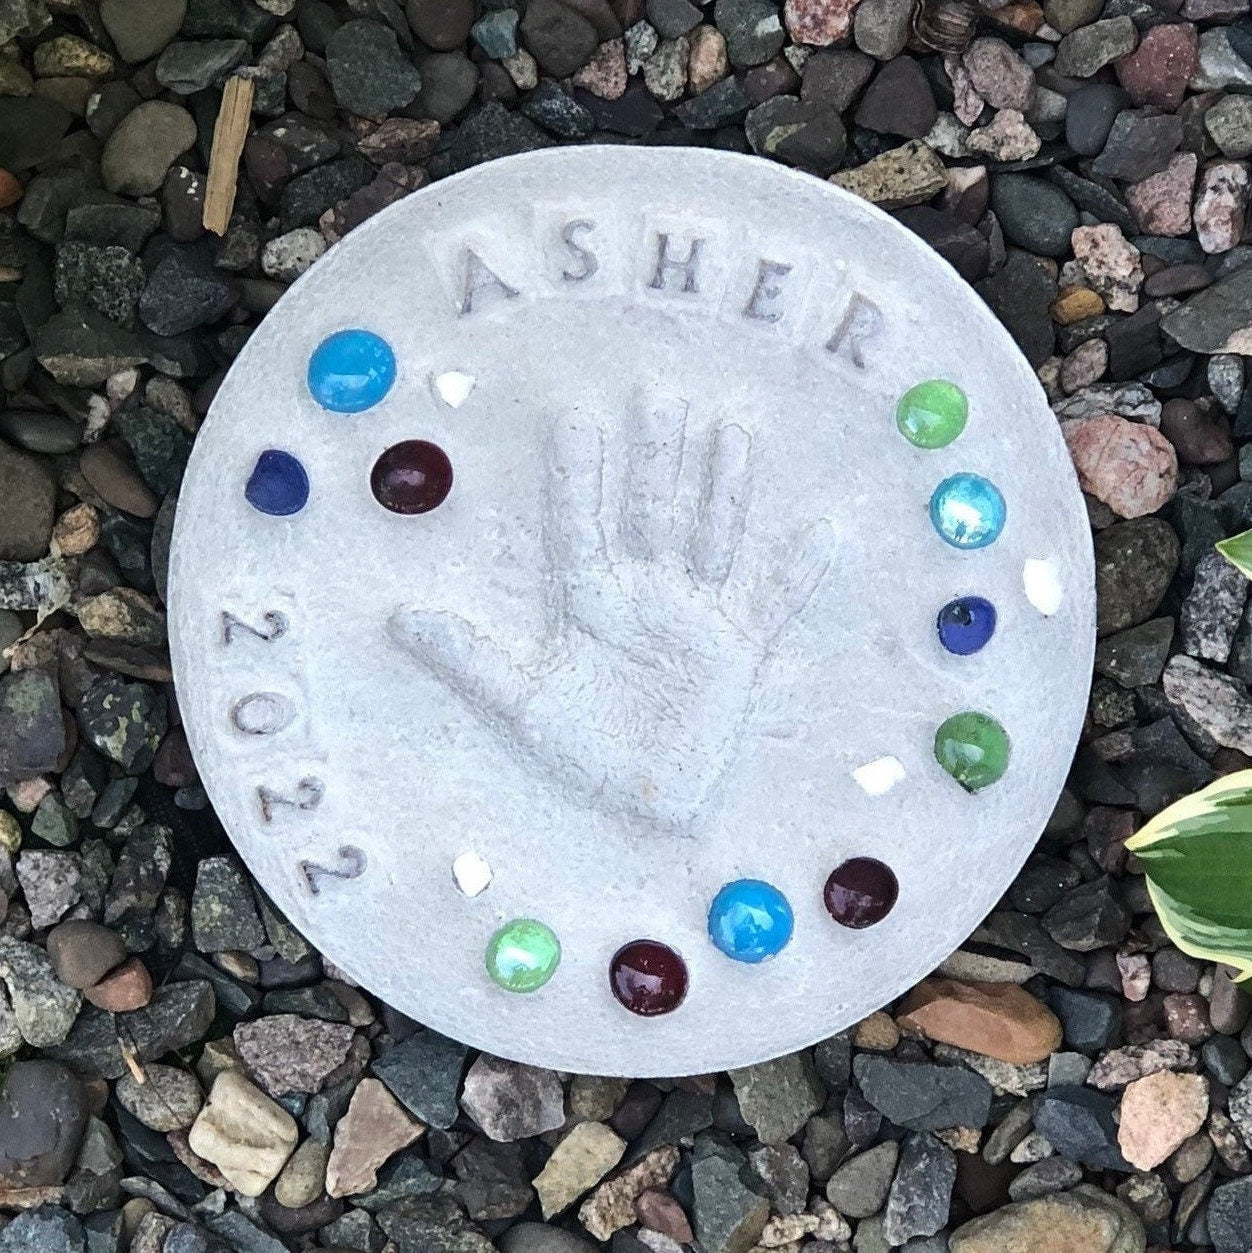 DIY stepping stone kit displayed on rock garden